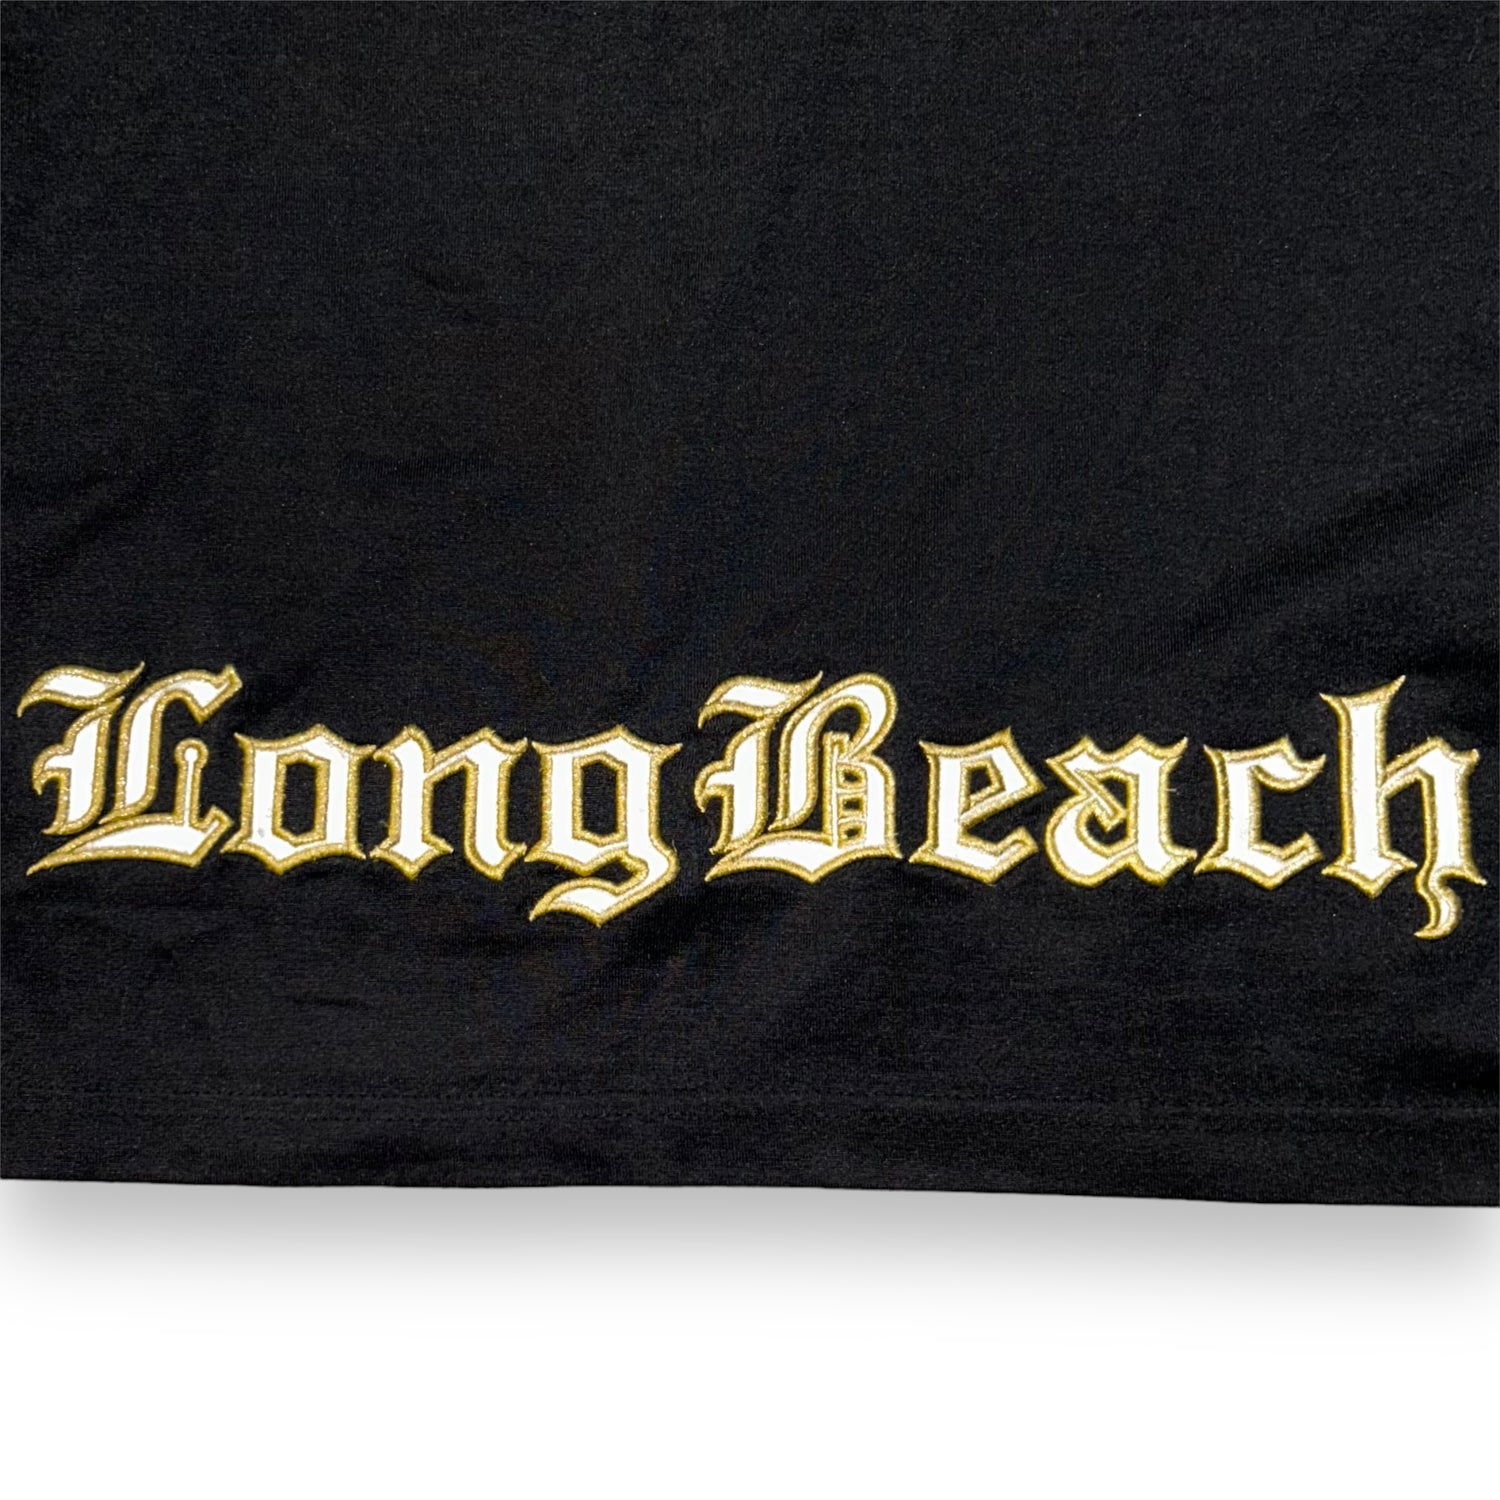 LONG BEACH ORIGINAL JERSEY